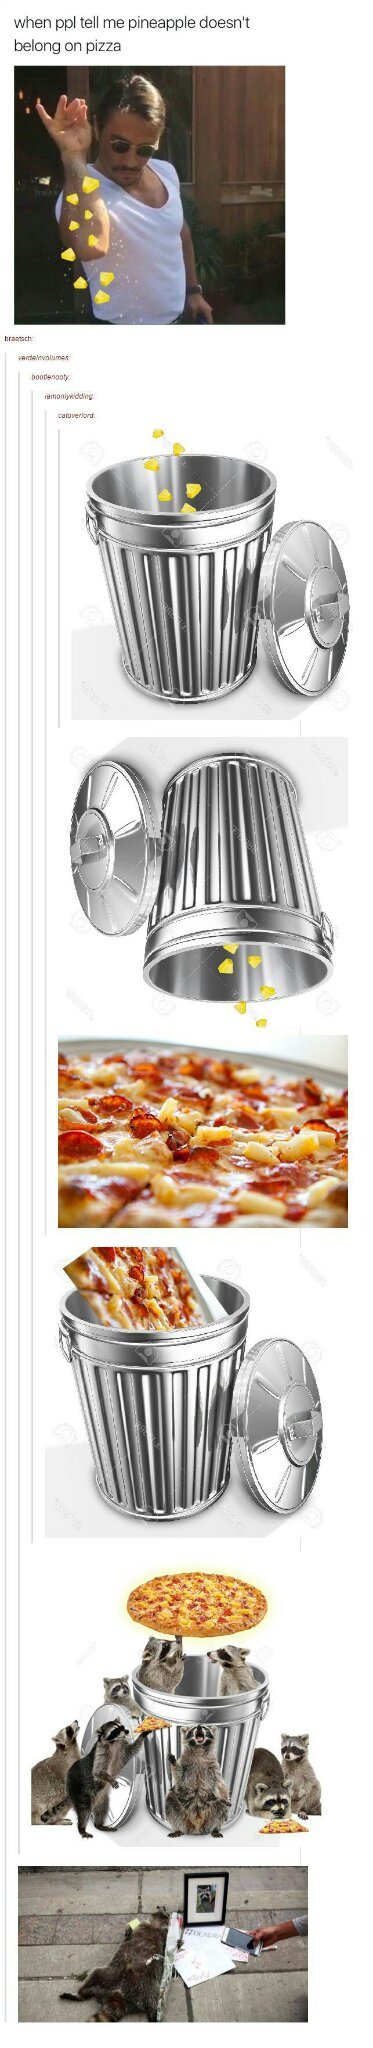 Pineapple on pizza is fucking gross - meme